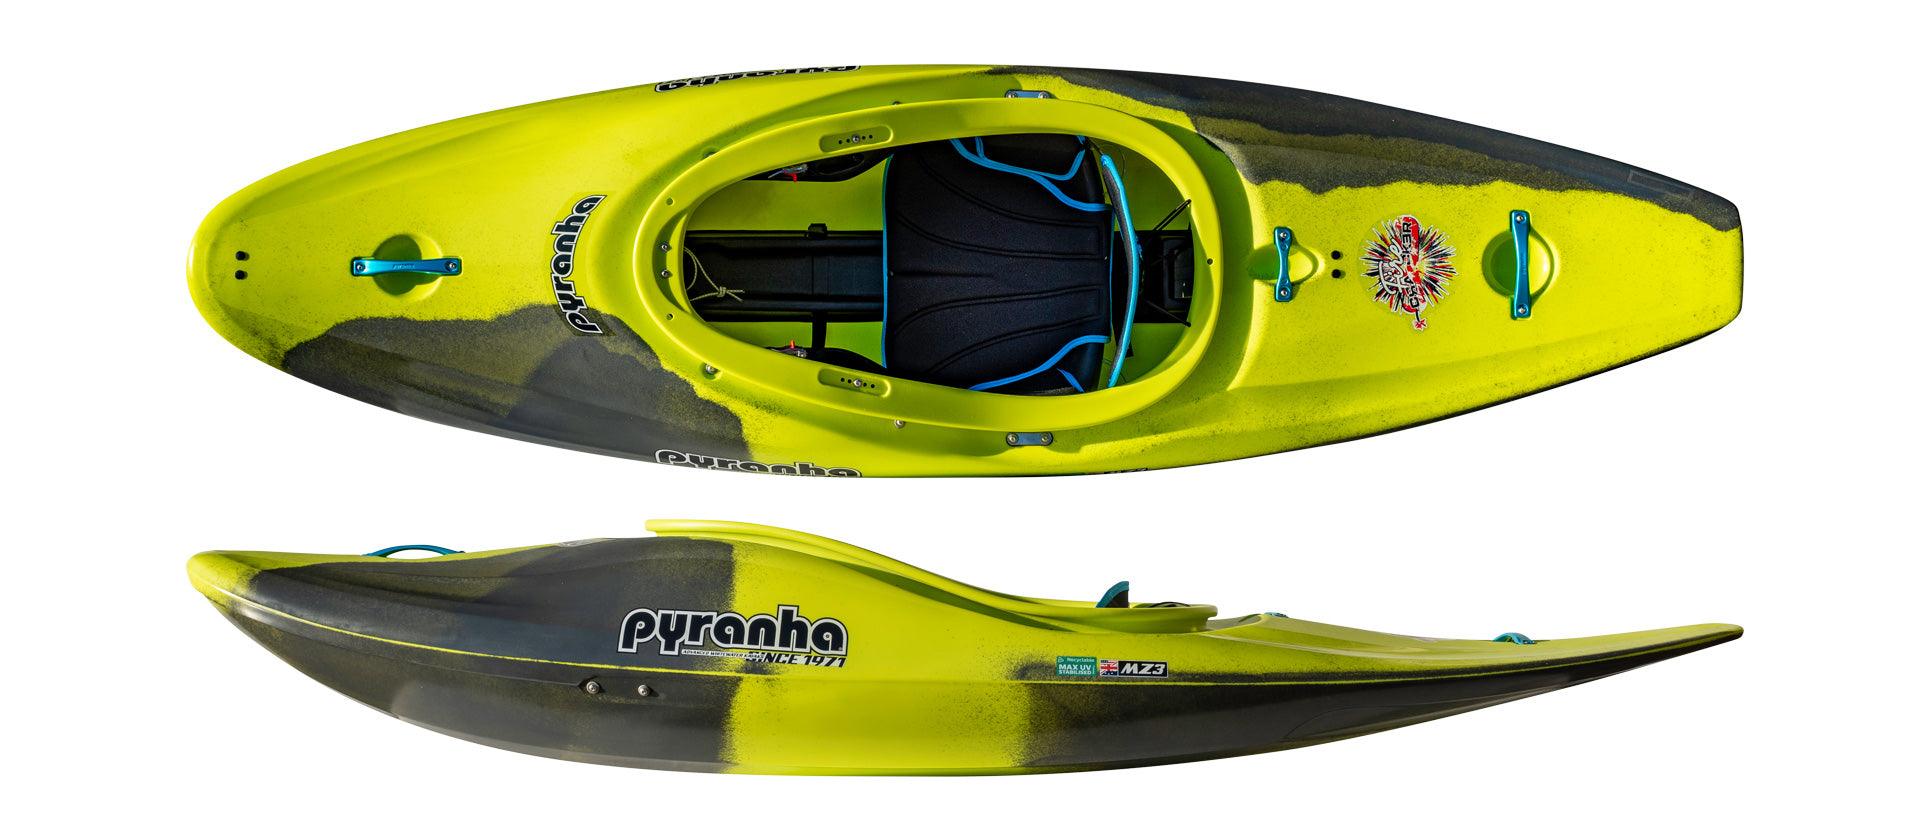 Pyranha Kayaks